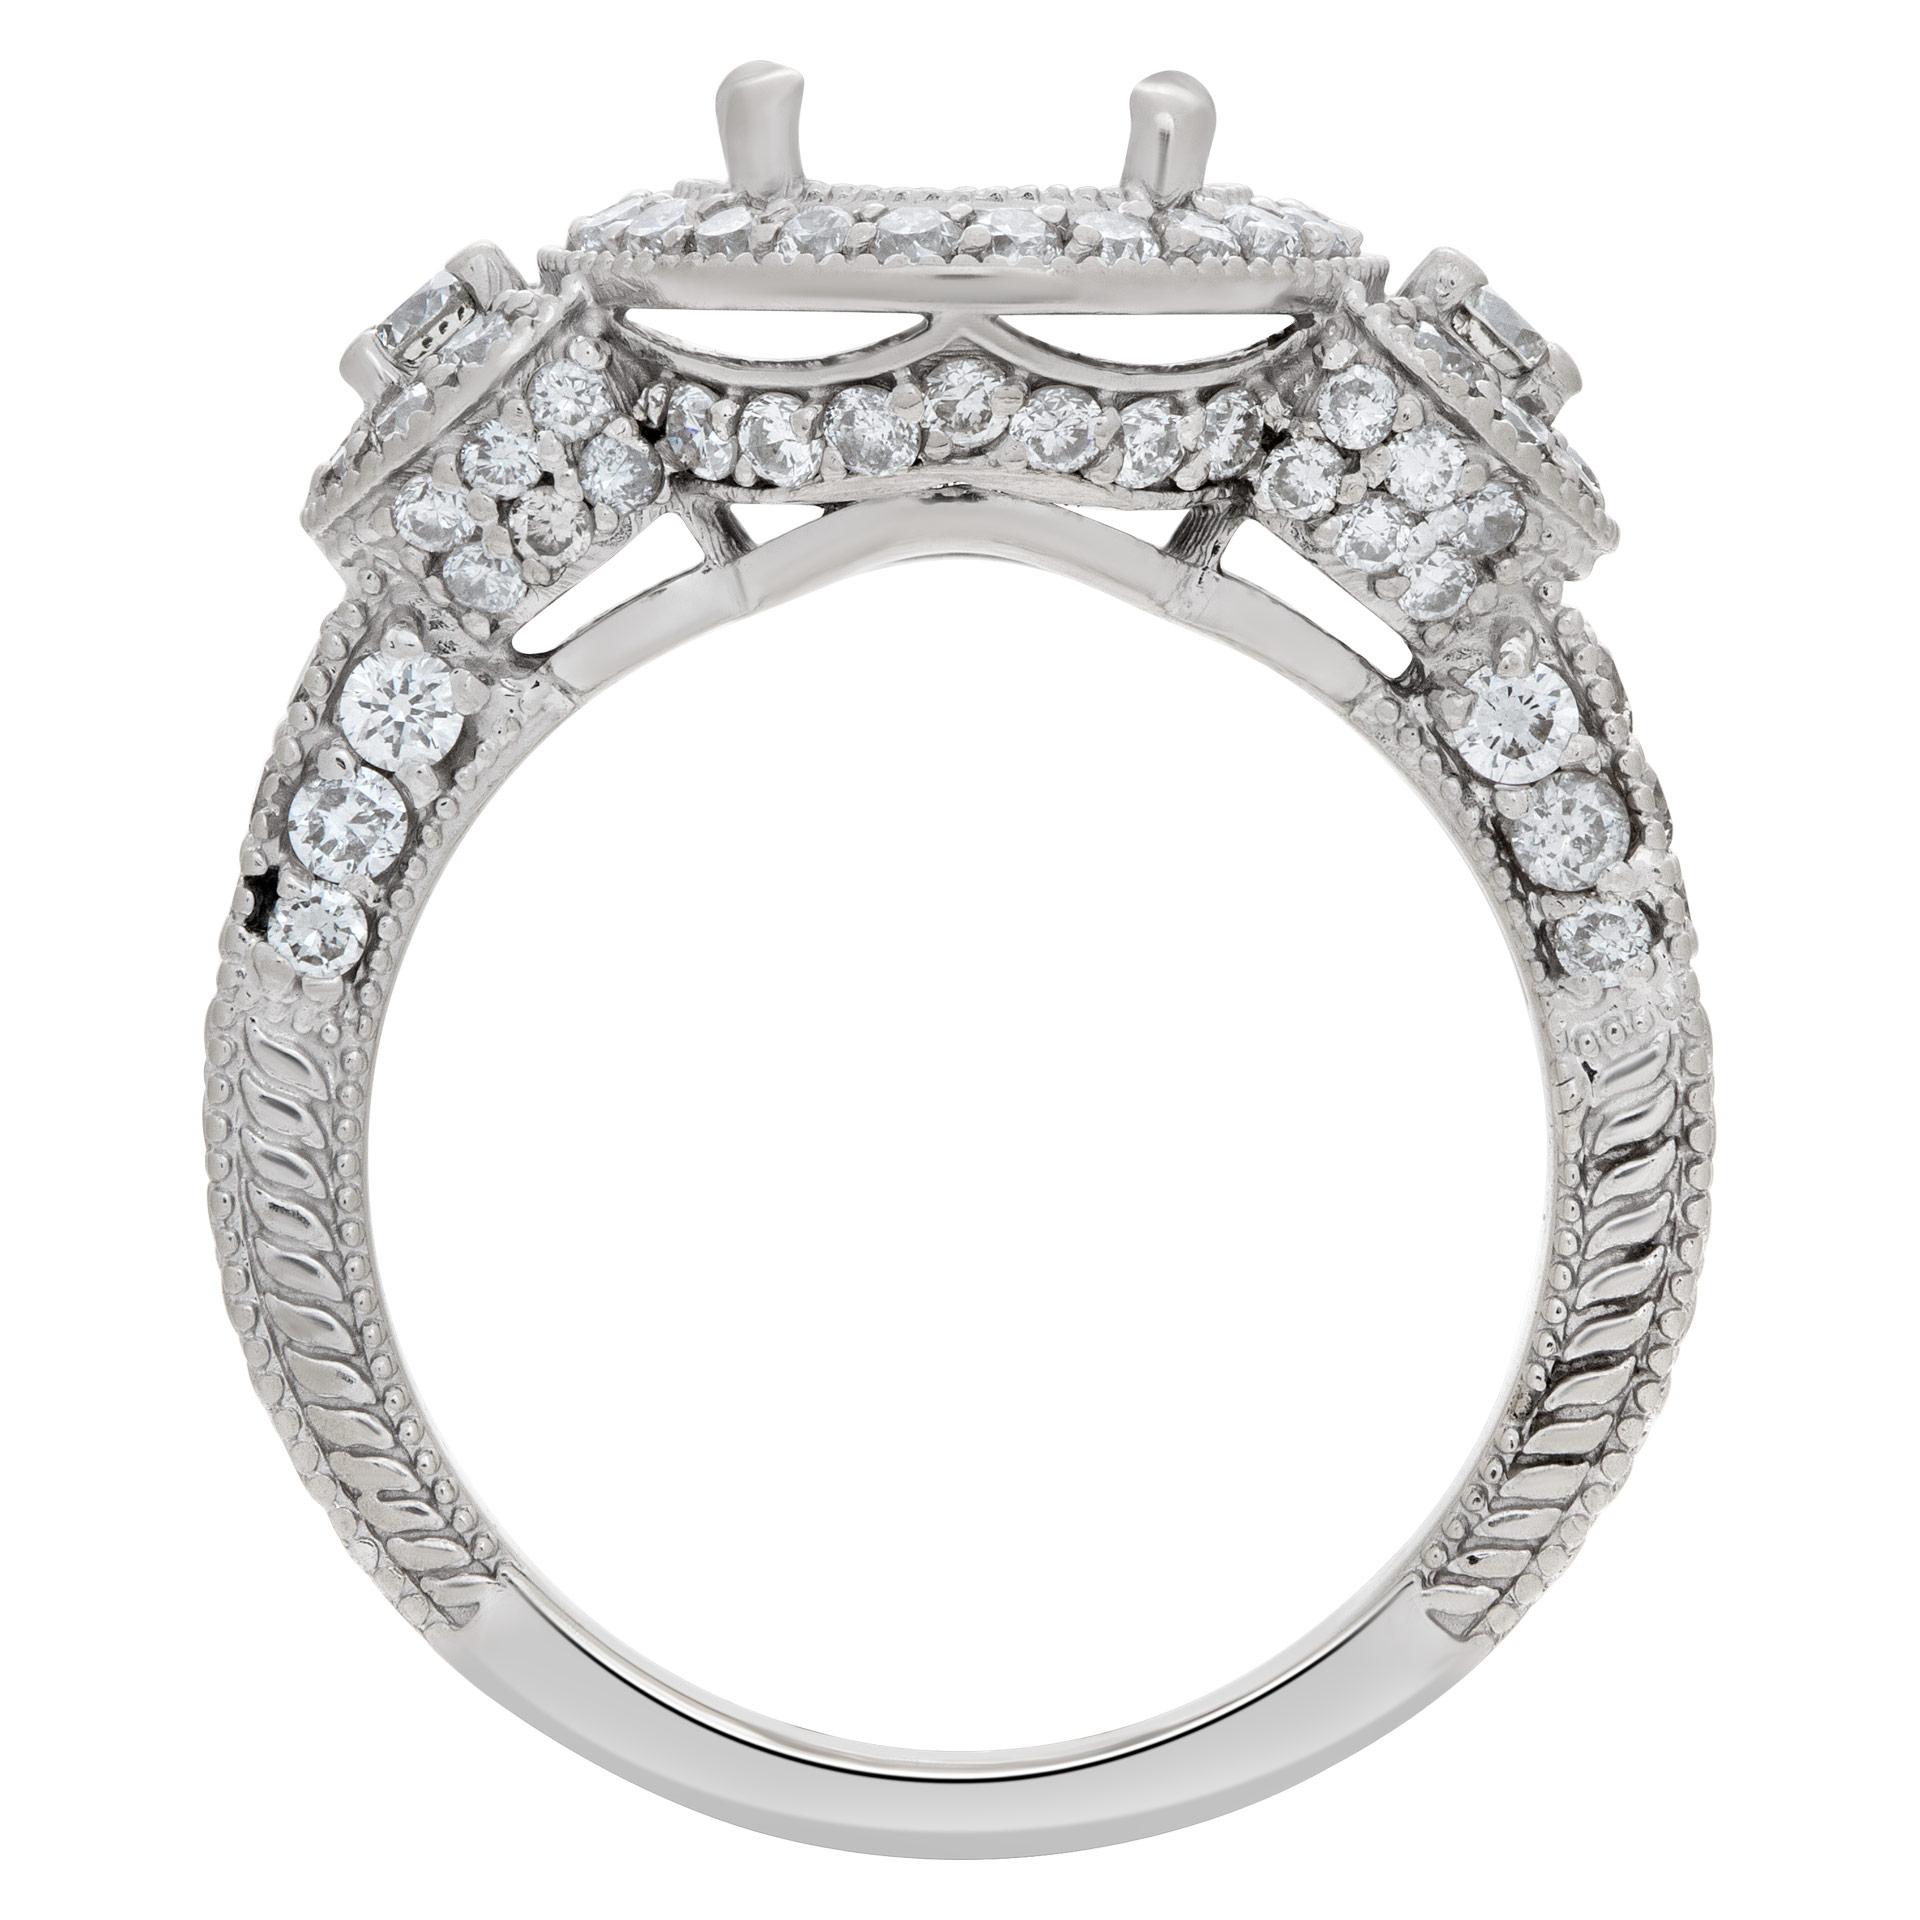 1 carat round cut diamond ring